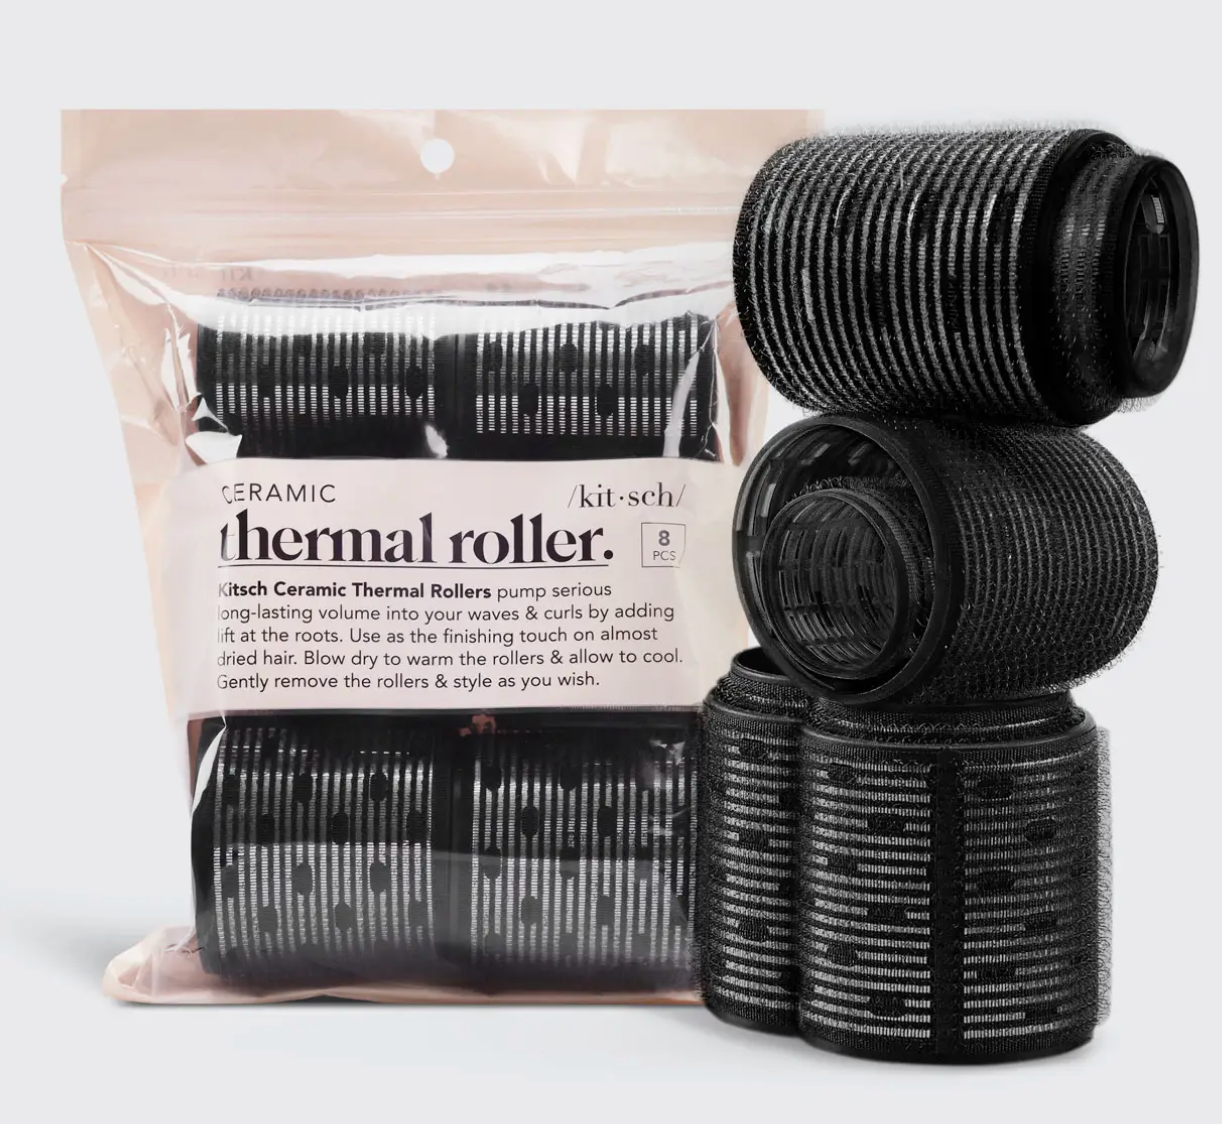 Ceramic Hair Roller by Kitsch